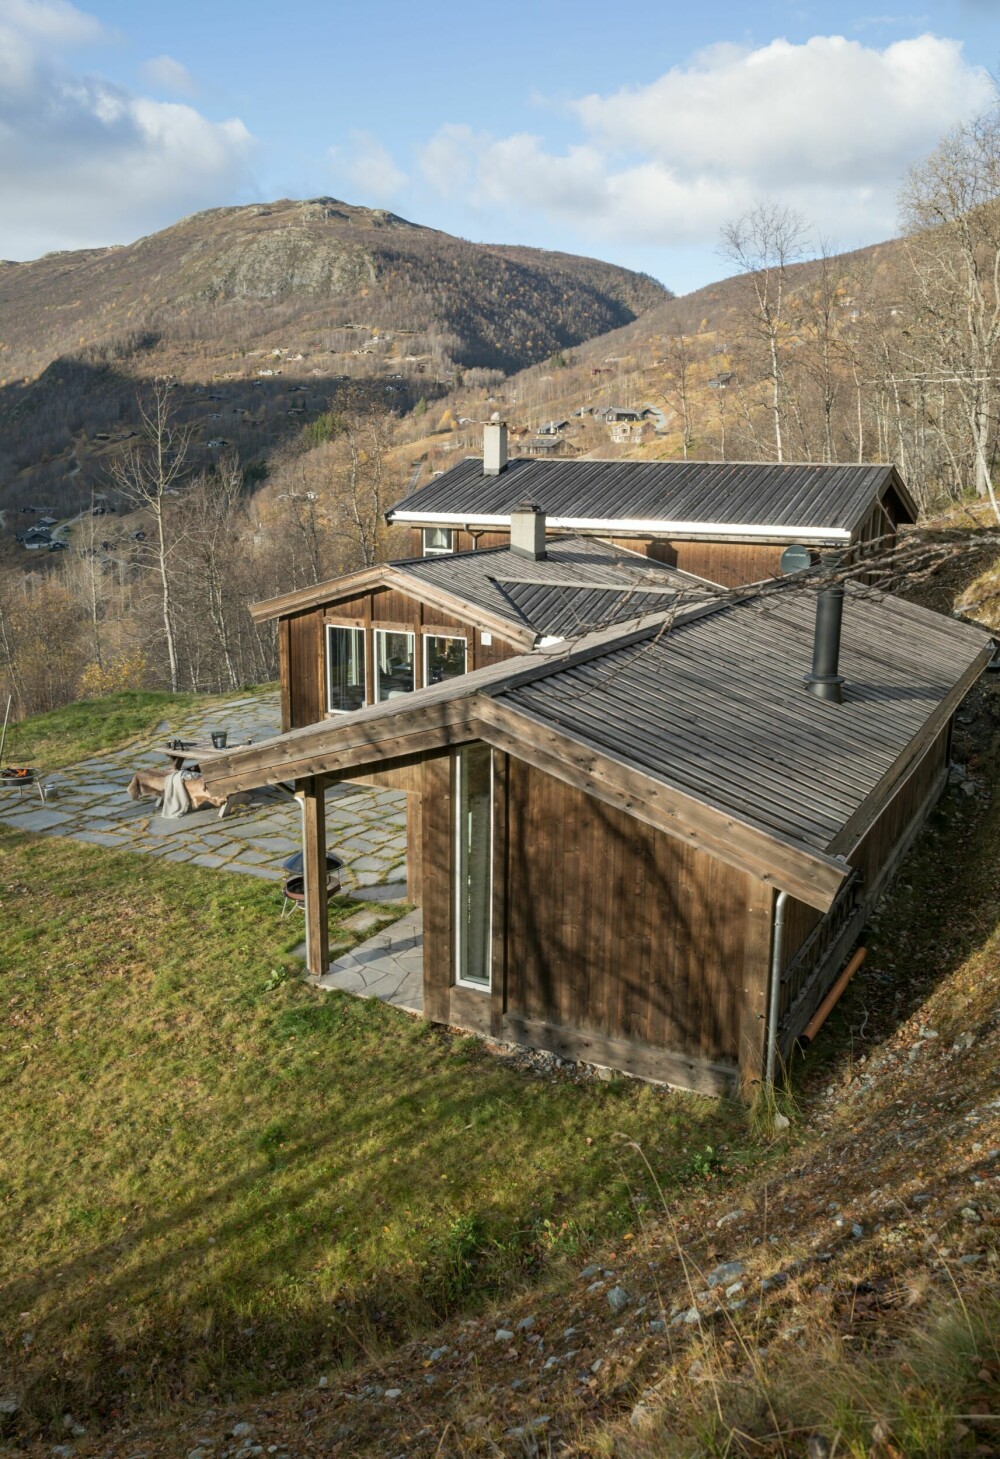 Hyttelegenden arkitekt Harald Melbye tegnet inn den gamle hytta som et midtpunkt, integrert i den nye arkitekturen. Hytta er formet etter tomten. Tretak er valgt fordi det er typisk byggeskikk for området.